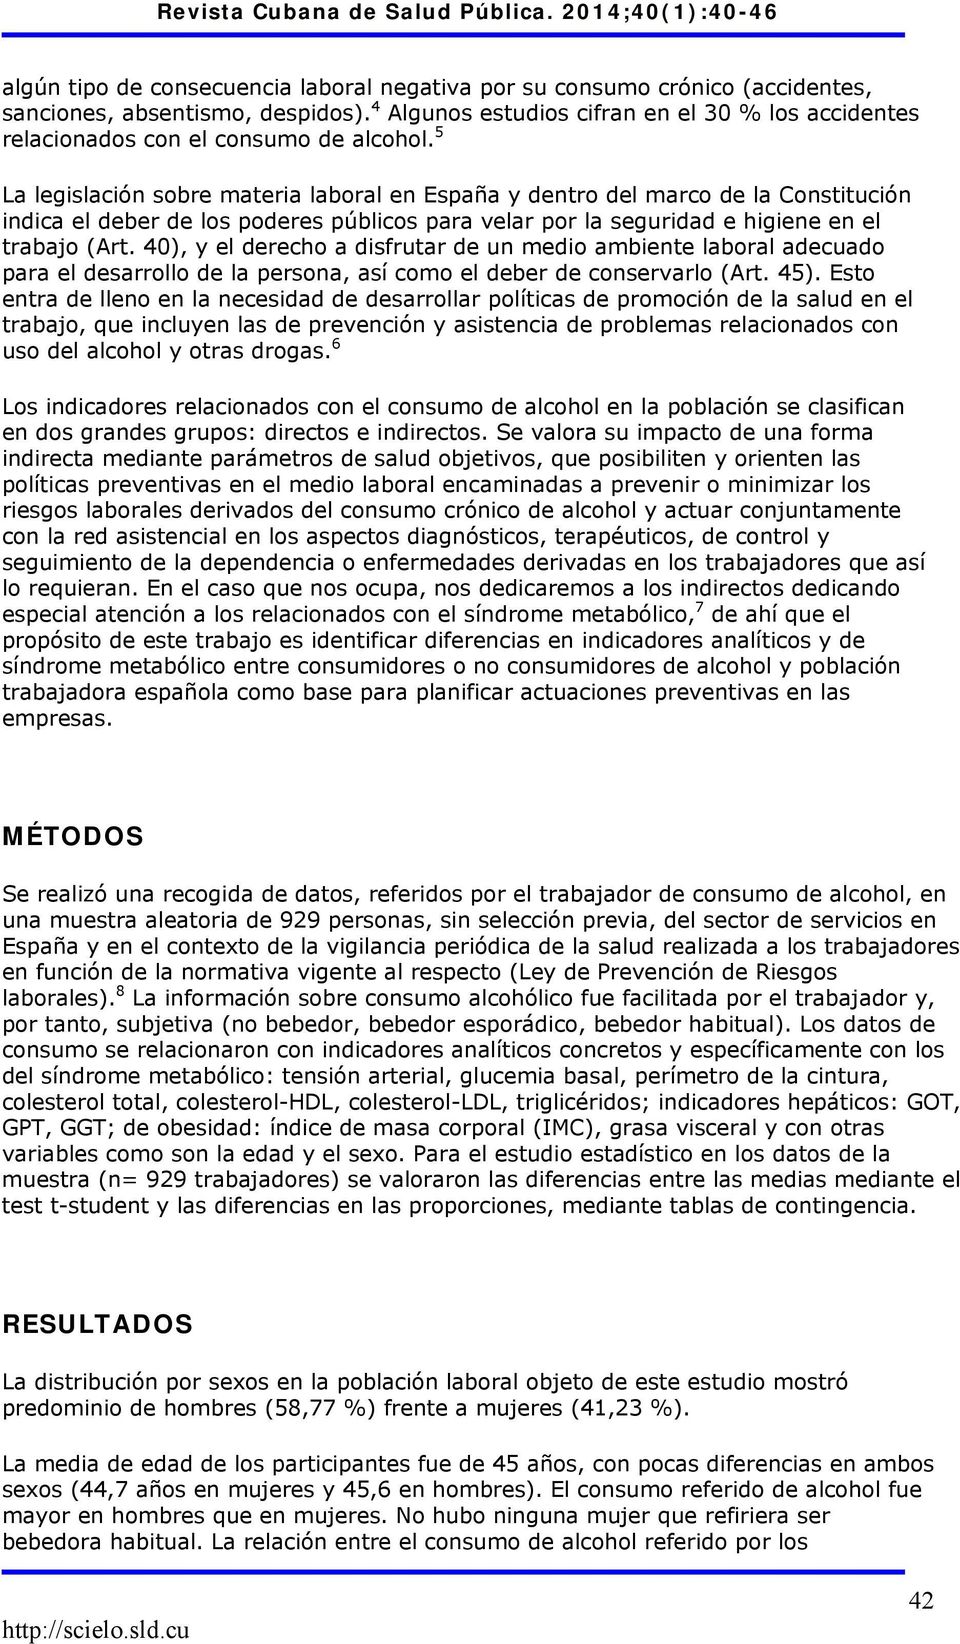 5 La legislación sobre materia laboral en España y dentro del marco de la Constitución indica el deber de los poderes públicos para velar por la seguridad e higiene en el trabajo (Art.